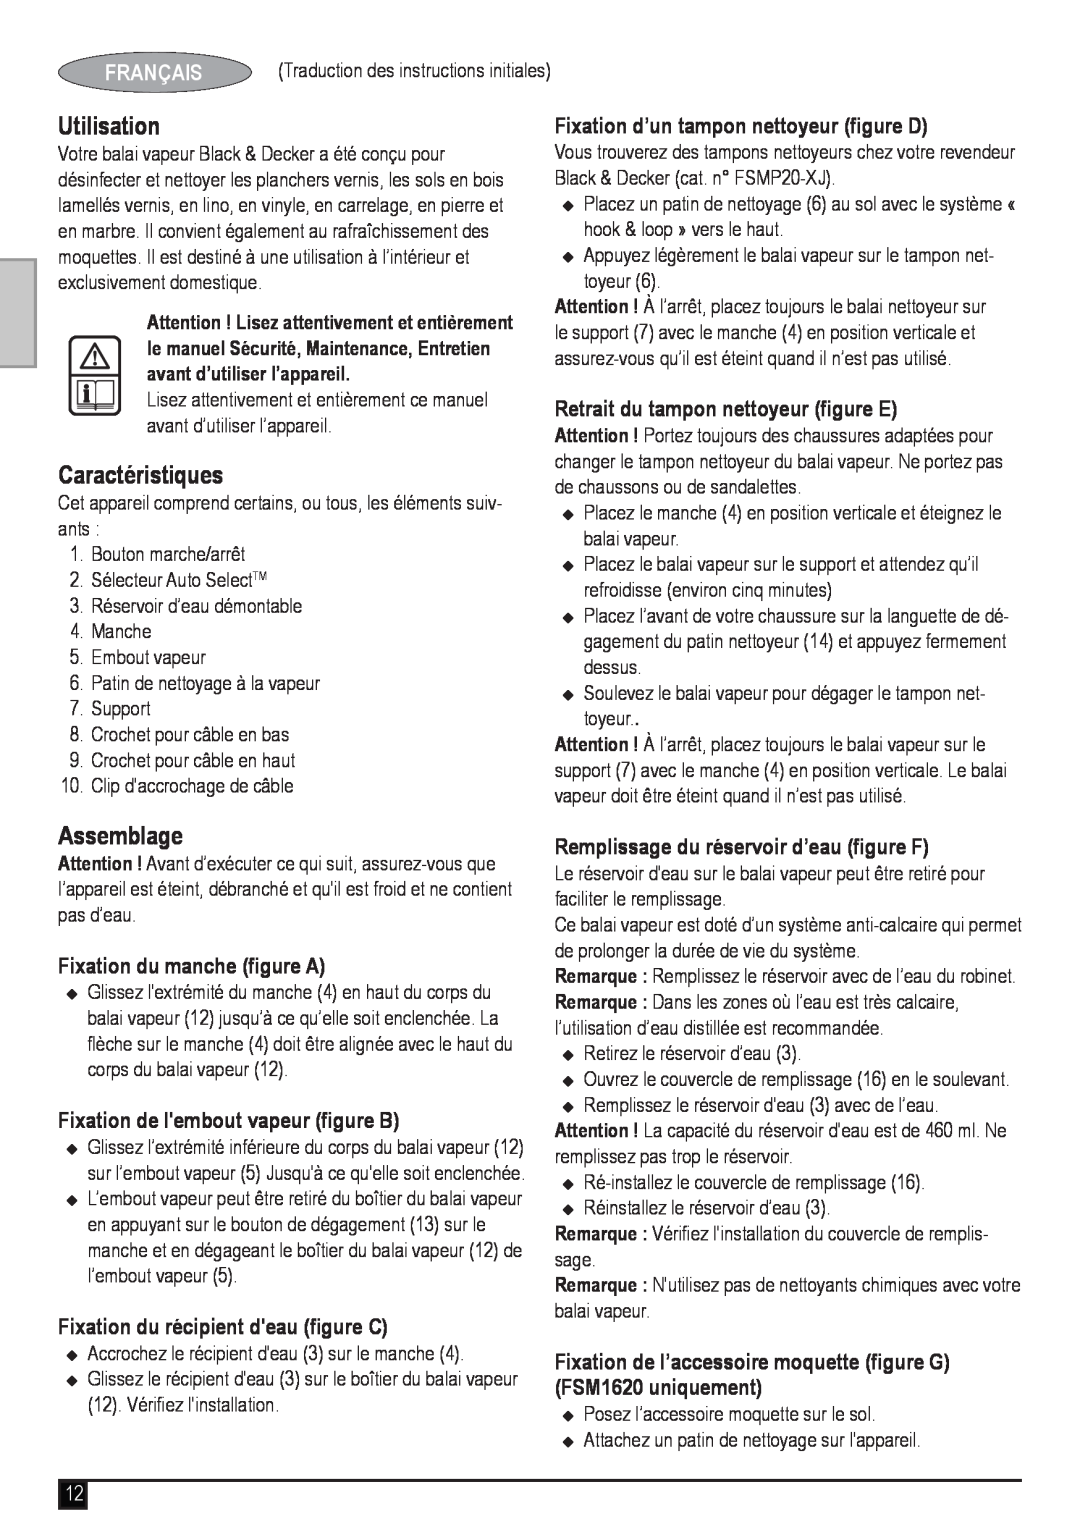 Black & Decker FSM1620 manual Utilisation, Caractéristiques, Assemblage, Français, Fixation d’un tampon nettoyeur figure D 